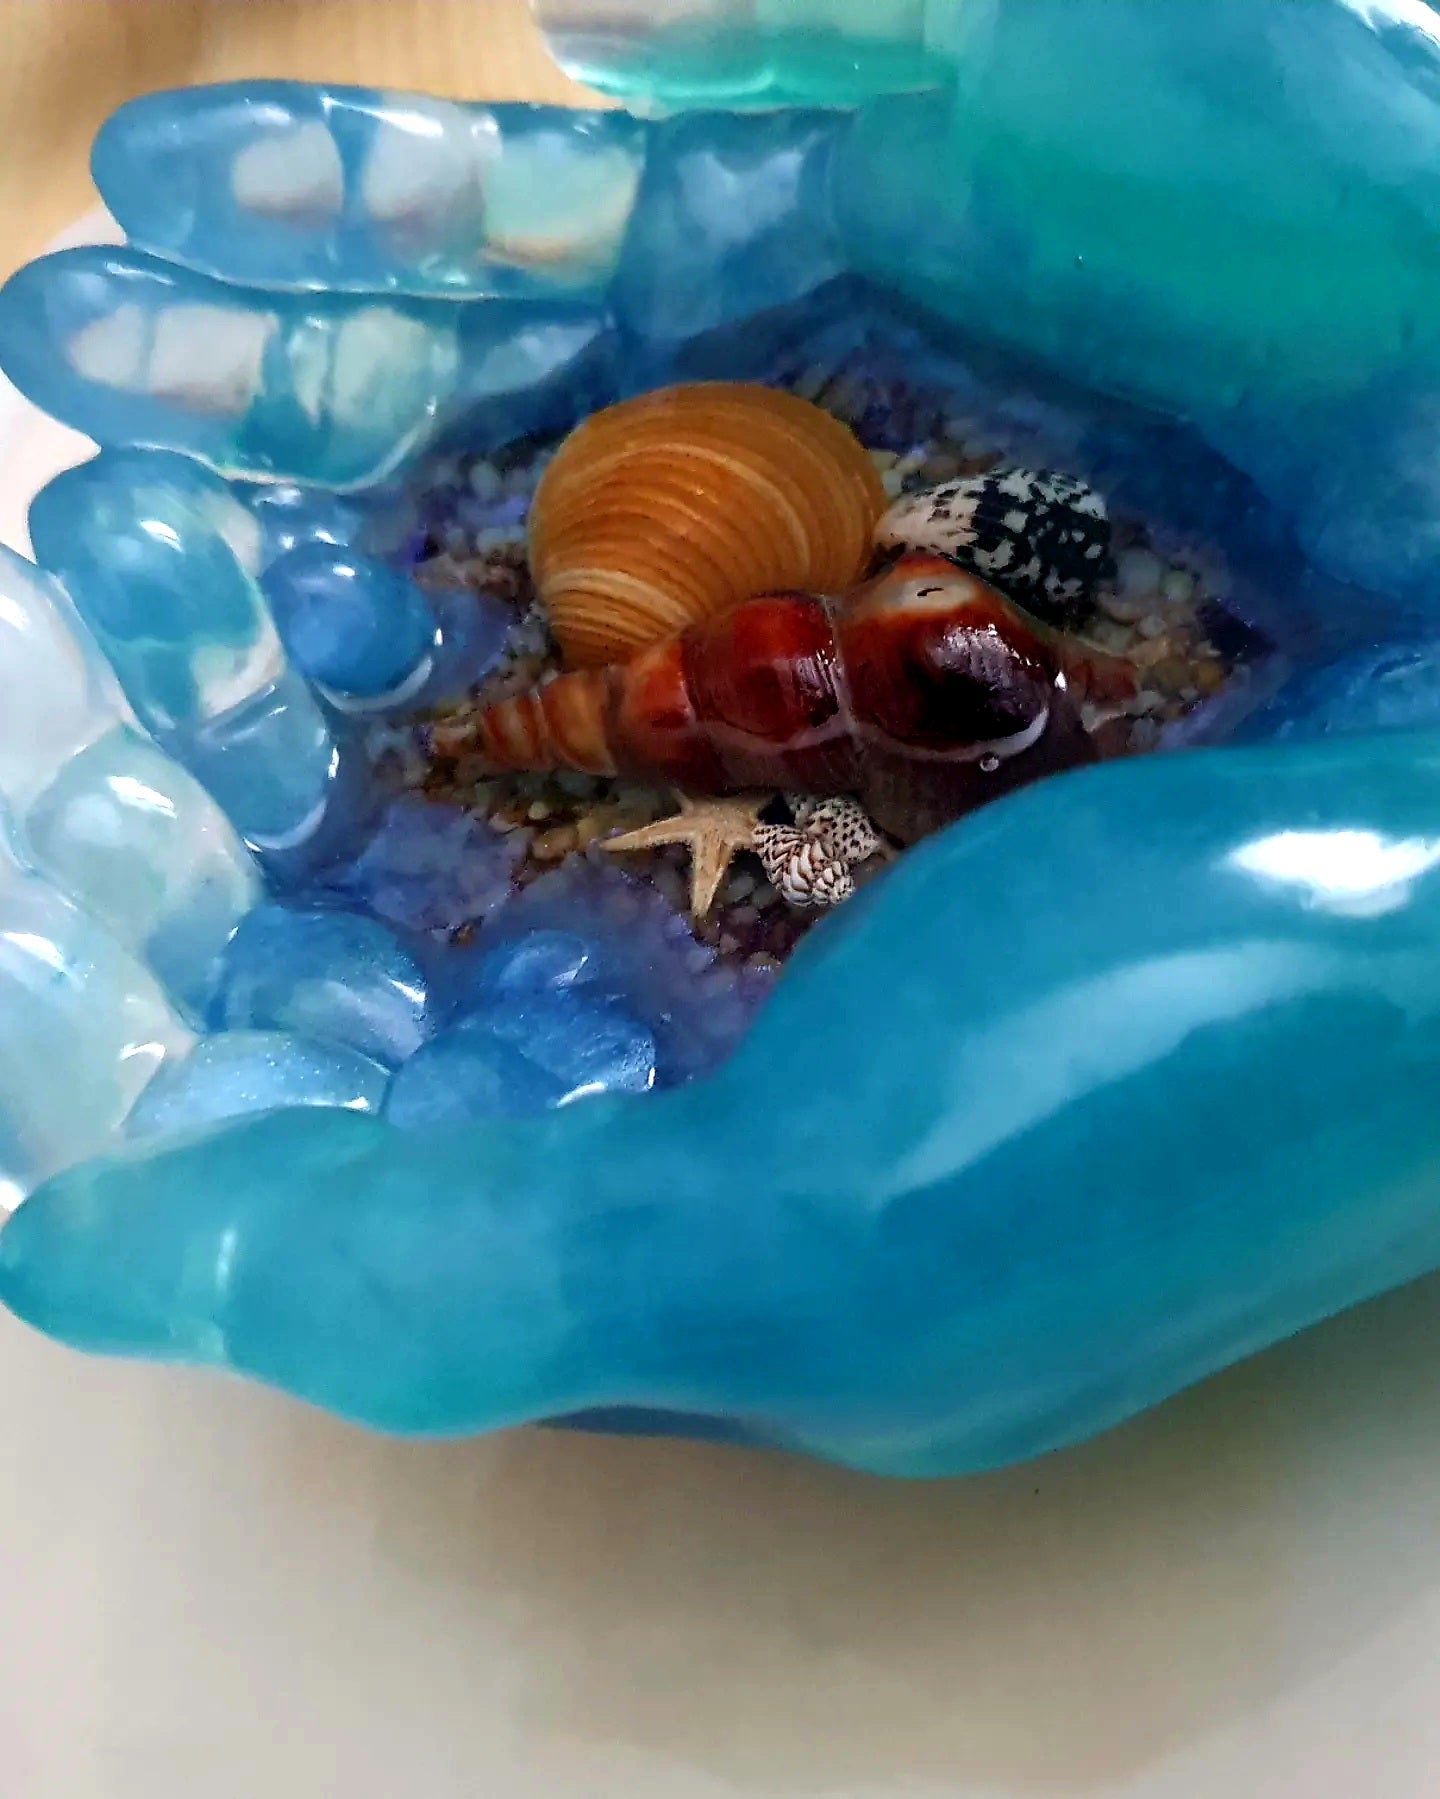 Ocean treasures unique bowl